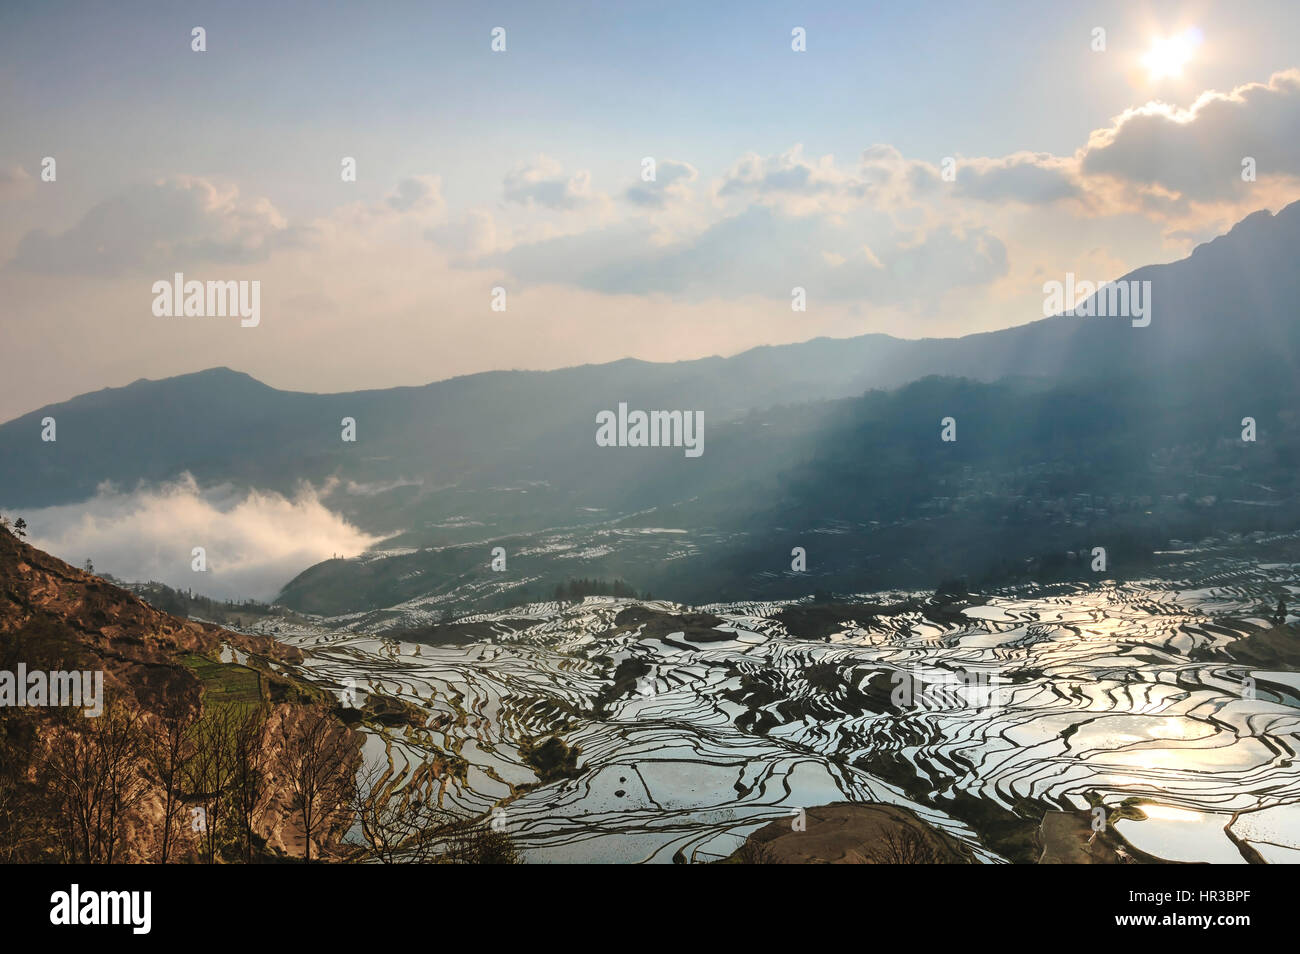 Sonnenaufgang über Reisterrassen von YuanYang in Yunnan, China, eines der jüngsten UNESCO-Welterbestätten Stockfoto